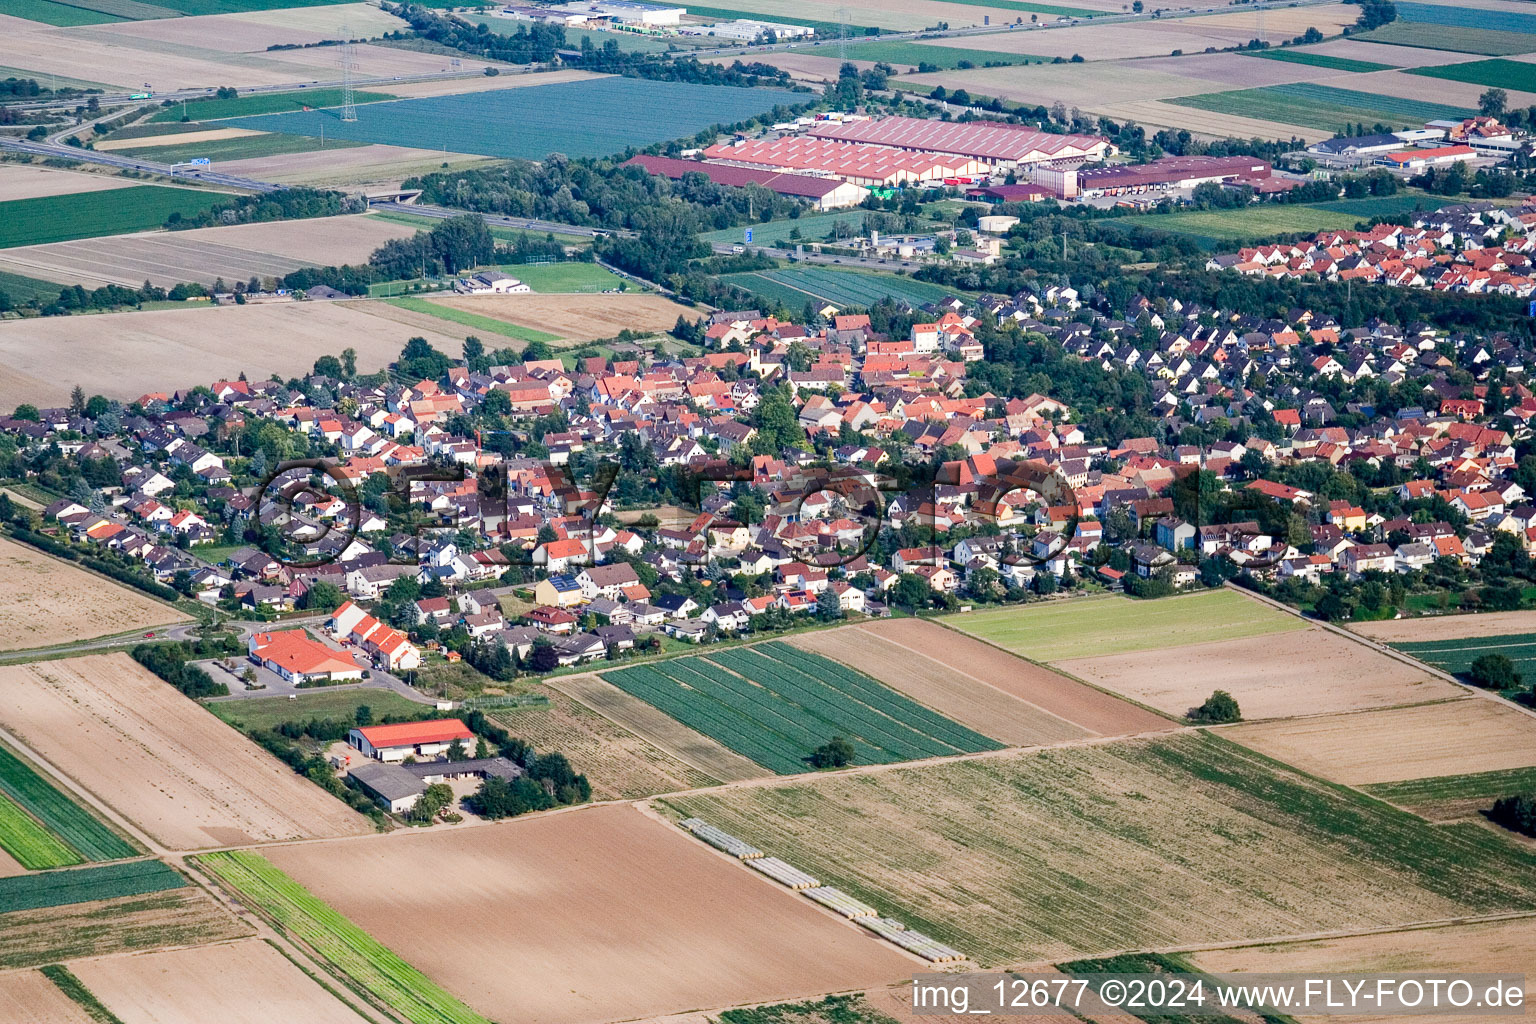 Luftbild von Ortsansicht der Straßen und Häuser der Wohngebiete im Ortsteil Schauernheim in Dannstadt-Schauernheim im Bundesland Rheinland-Pfalz, Deutschland